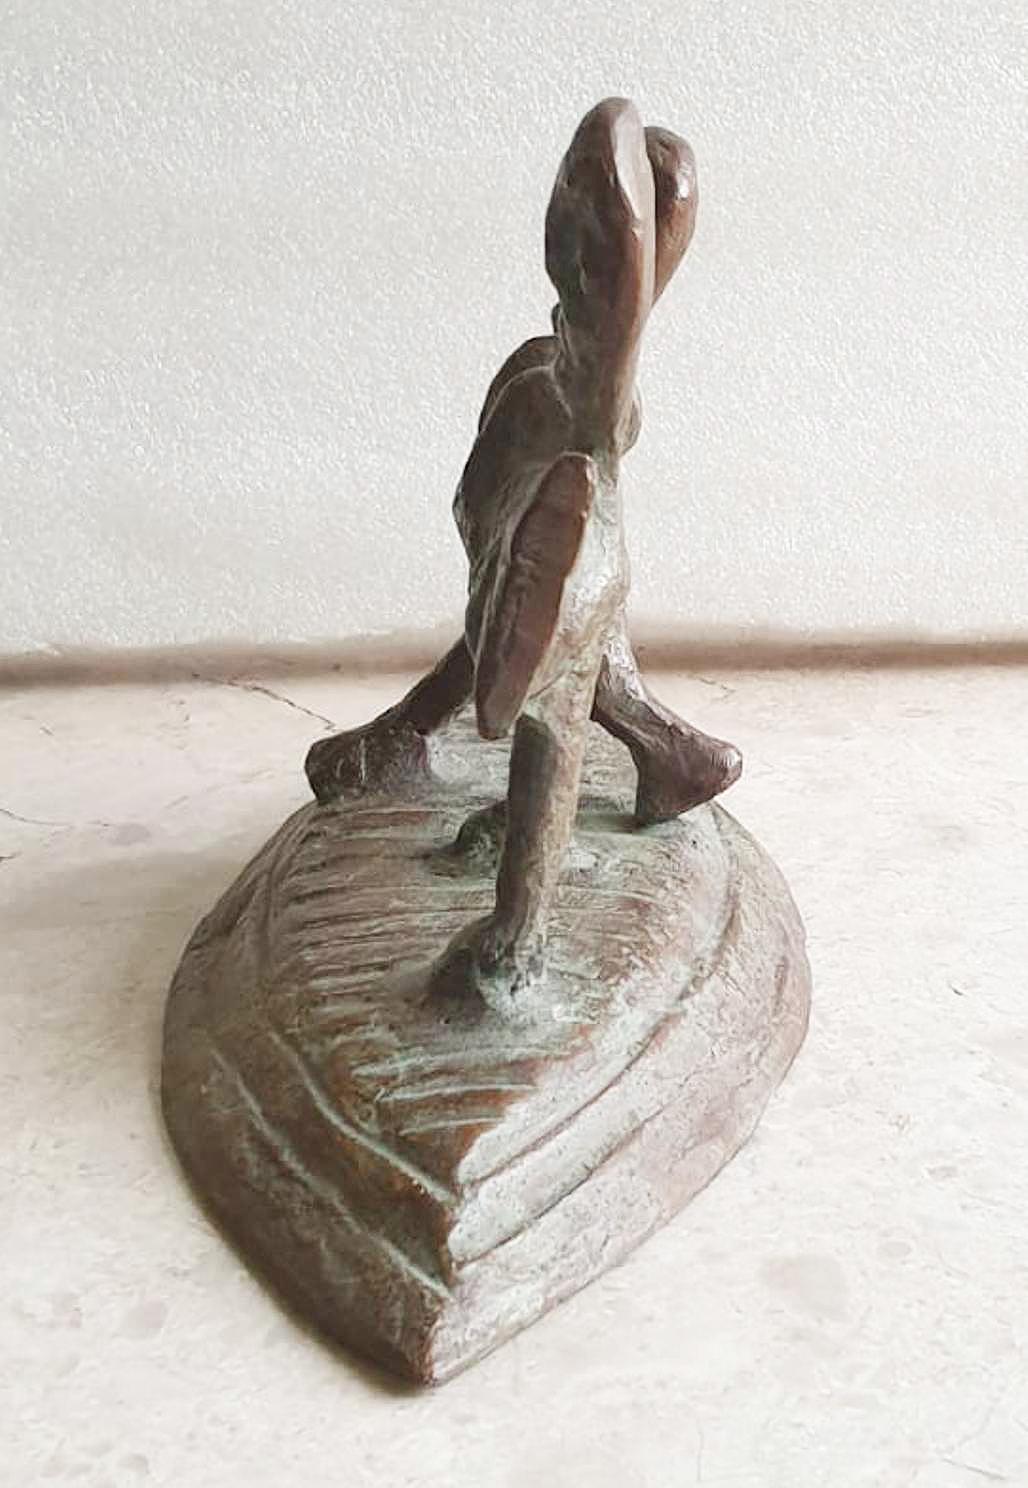 Subrata Biswas - Vie innocente
Bronze, H 6 x L 11 x P 4.75 pouces

Style : Le motif de l'enfant dans sa forme la plus élémentaire apparaît assez souvent dans les œuvres de Subrata Biswas. La forme humaine élémentaire représentant l'enfant complète